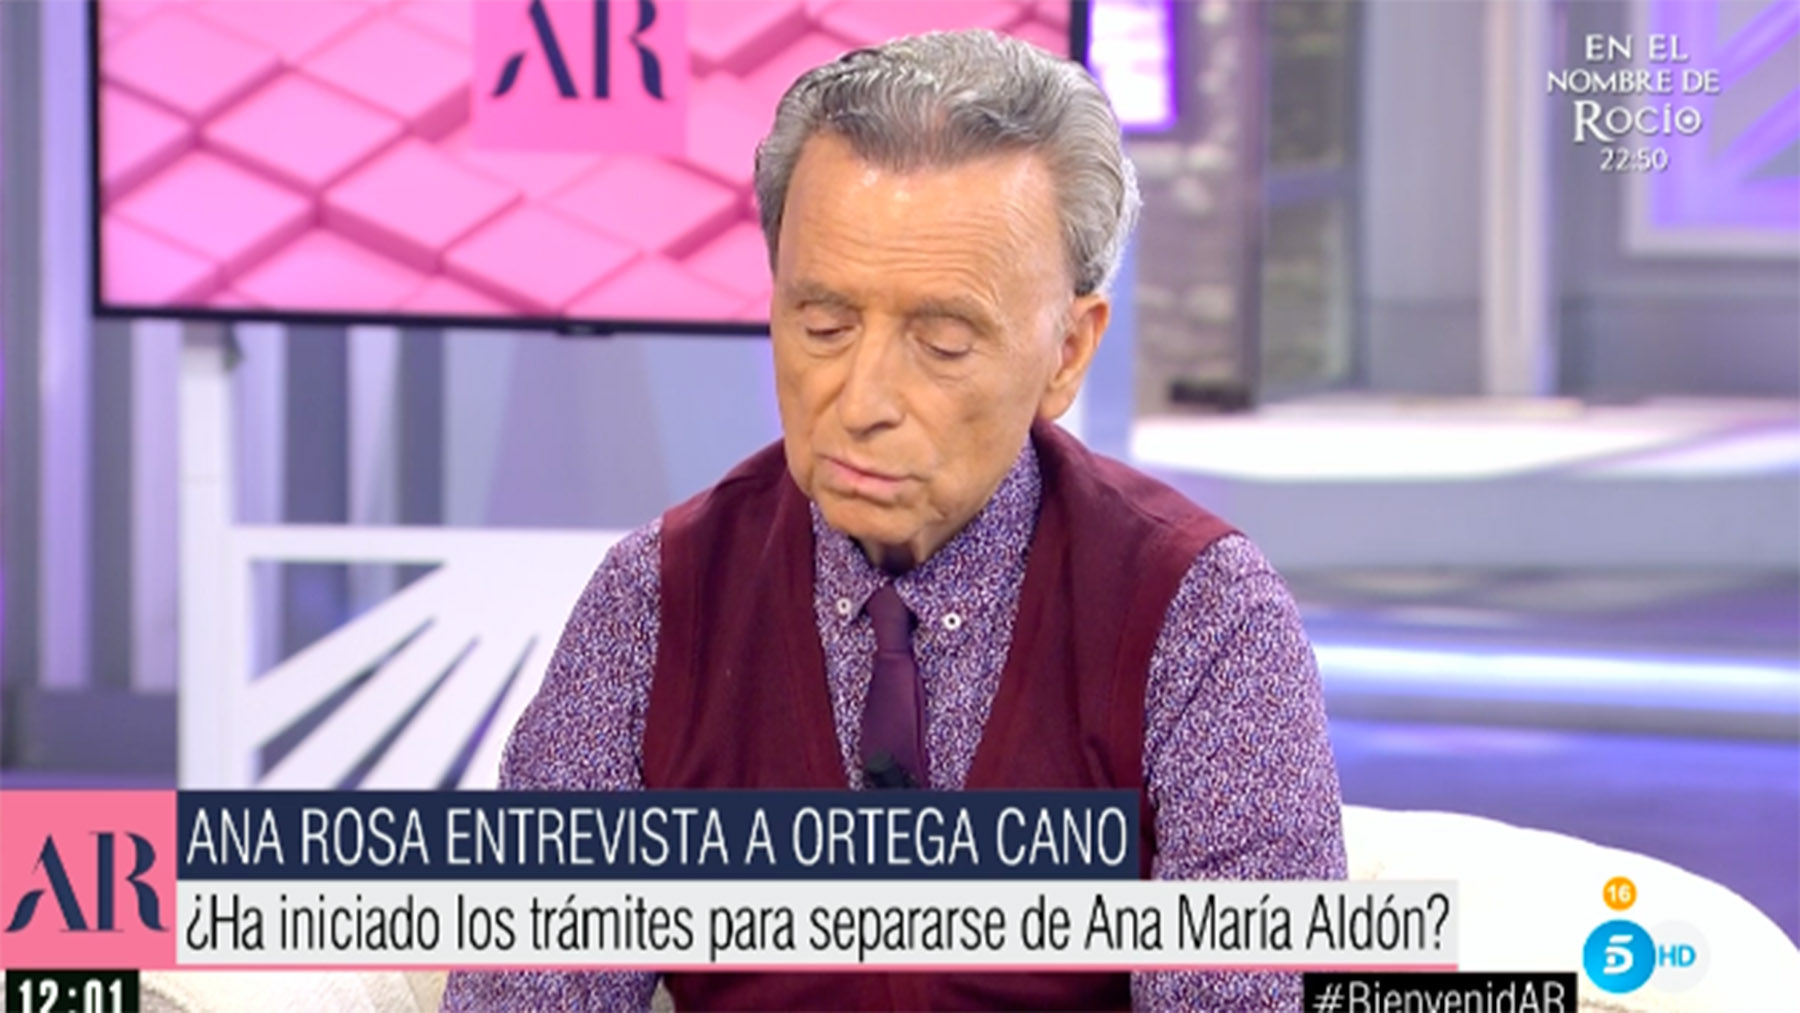 Ortega Cano, pensativo durante la entrevista / Telecinco